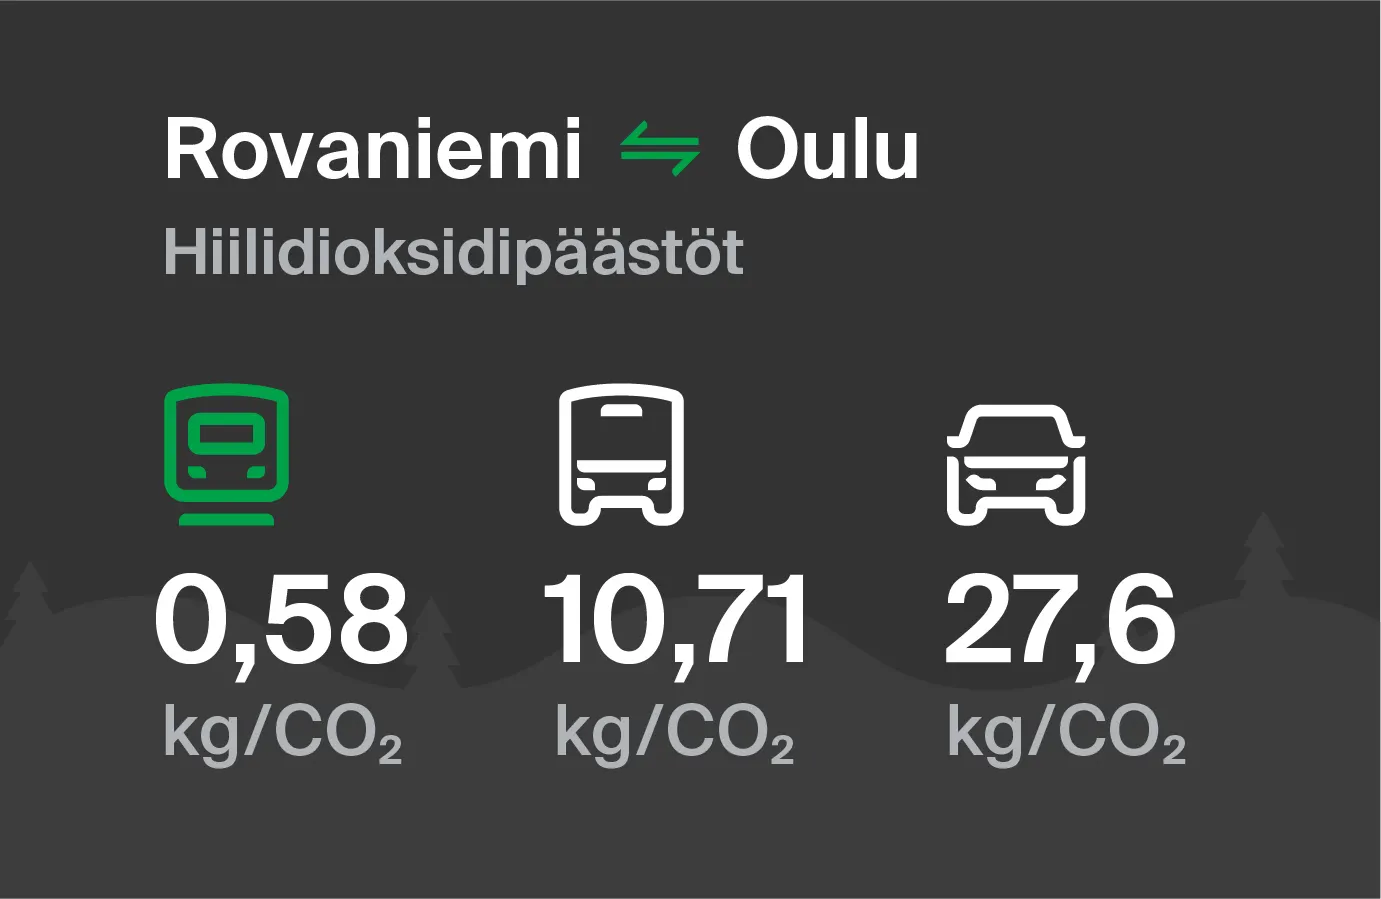 Koldioxidutsläpp från Rovaniemi till Uleåborg genom olika transportsätt: med tåg 0,58 kg/CO2, med buss 10,71 kg/CO2 och med bil 27,6 kg/CO2.